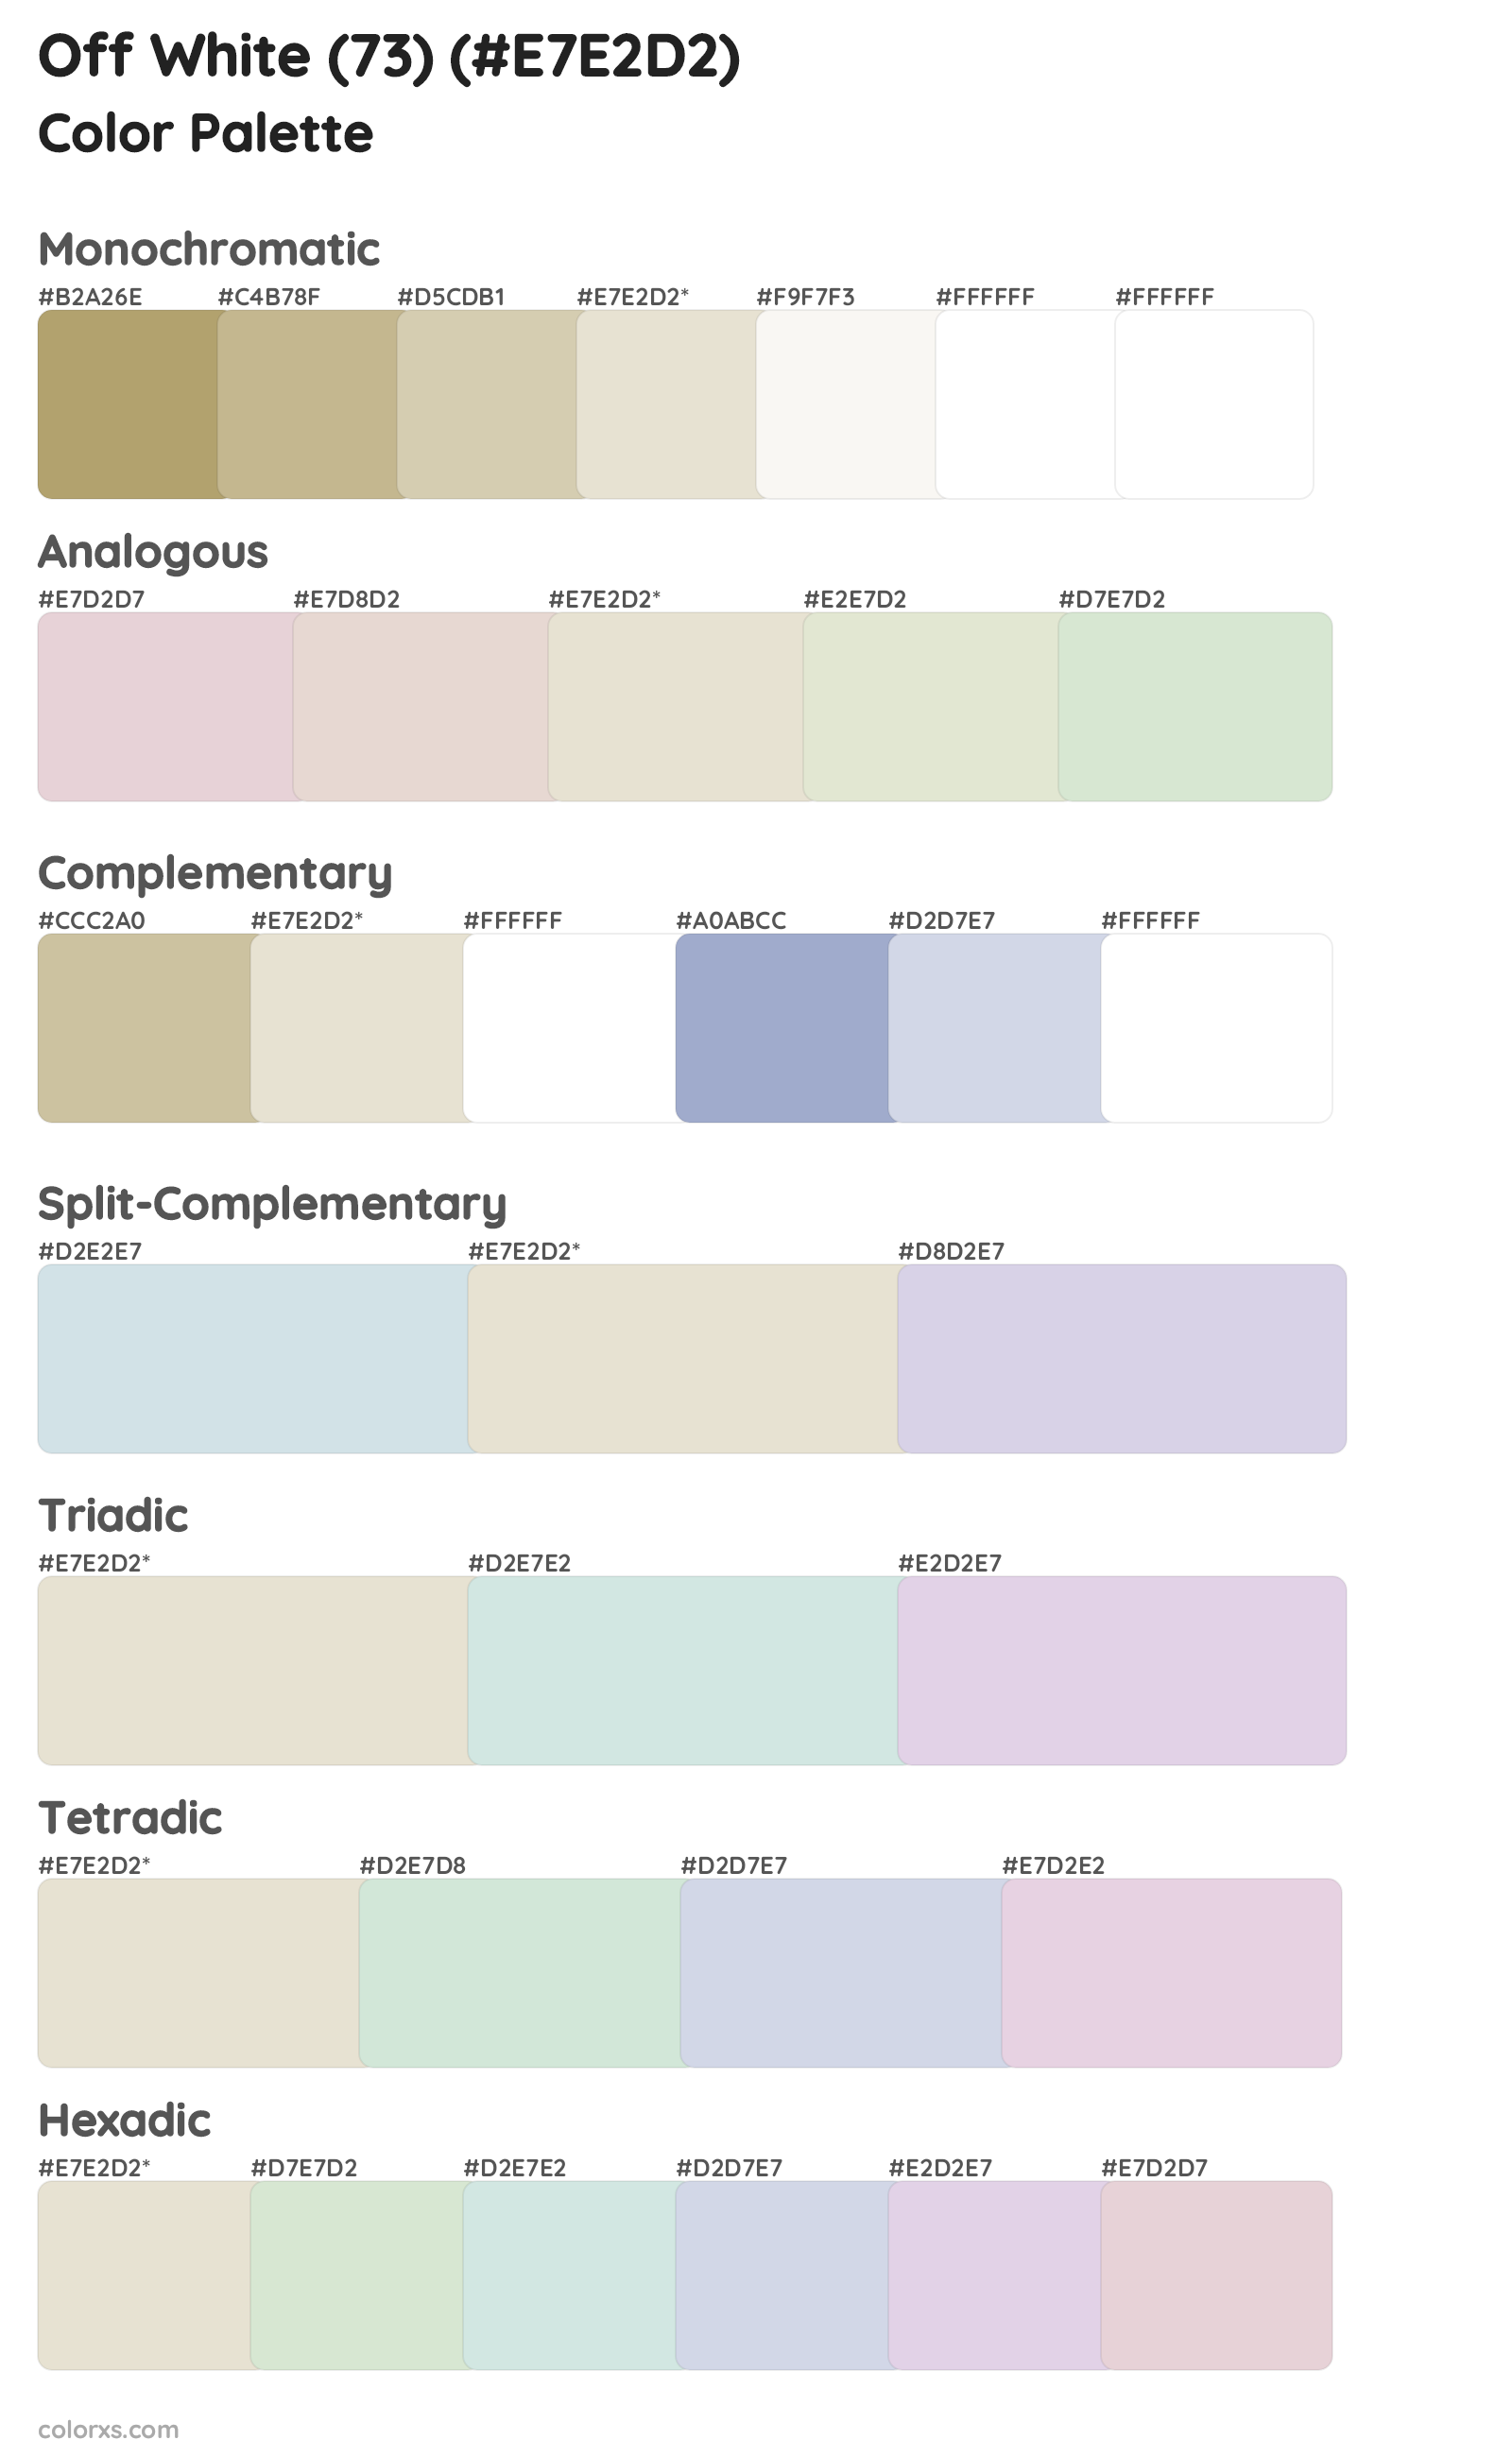 Off White (73) Color Scheme Palettes